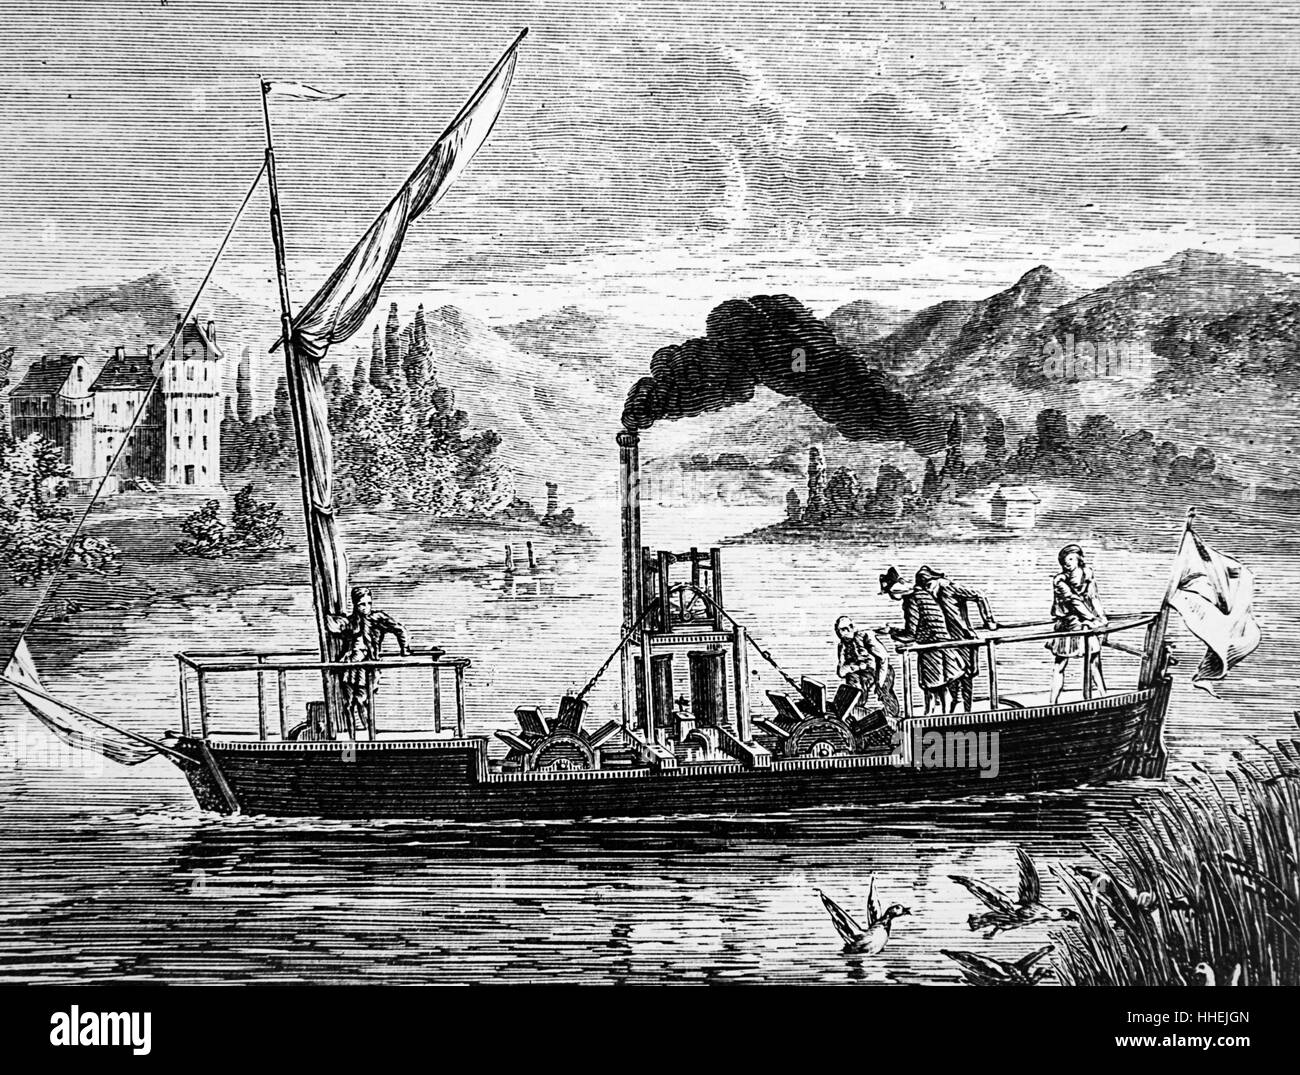 Gravur der Dampfmaschine Symington's, erfolgreich eingesetzt, um die Paddel von einem Boot auf See Dalswinton, Schottland zu fahren. Vom 18. Jahrhundert Stockfoto